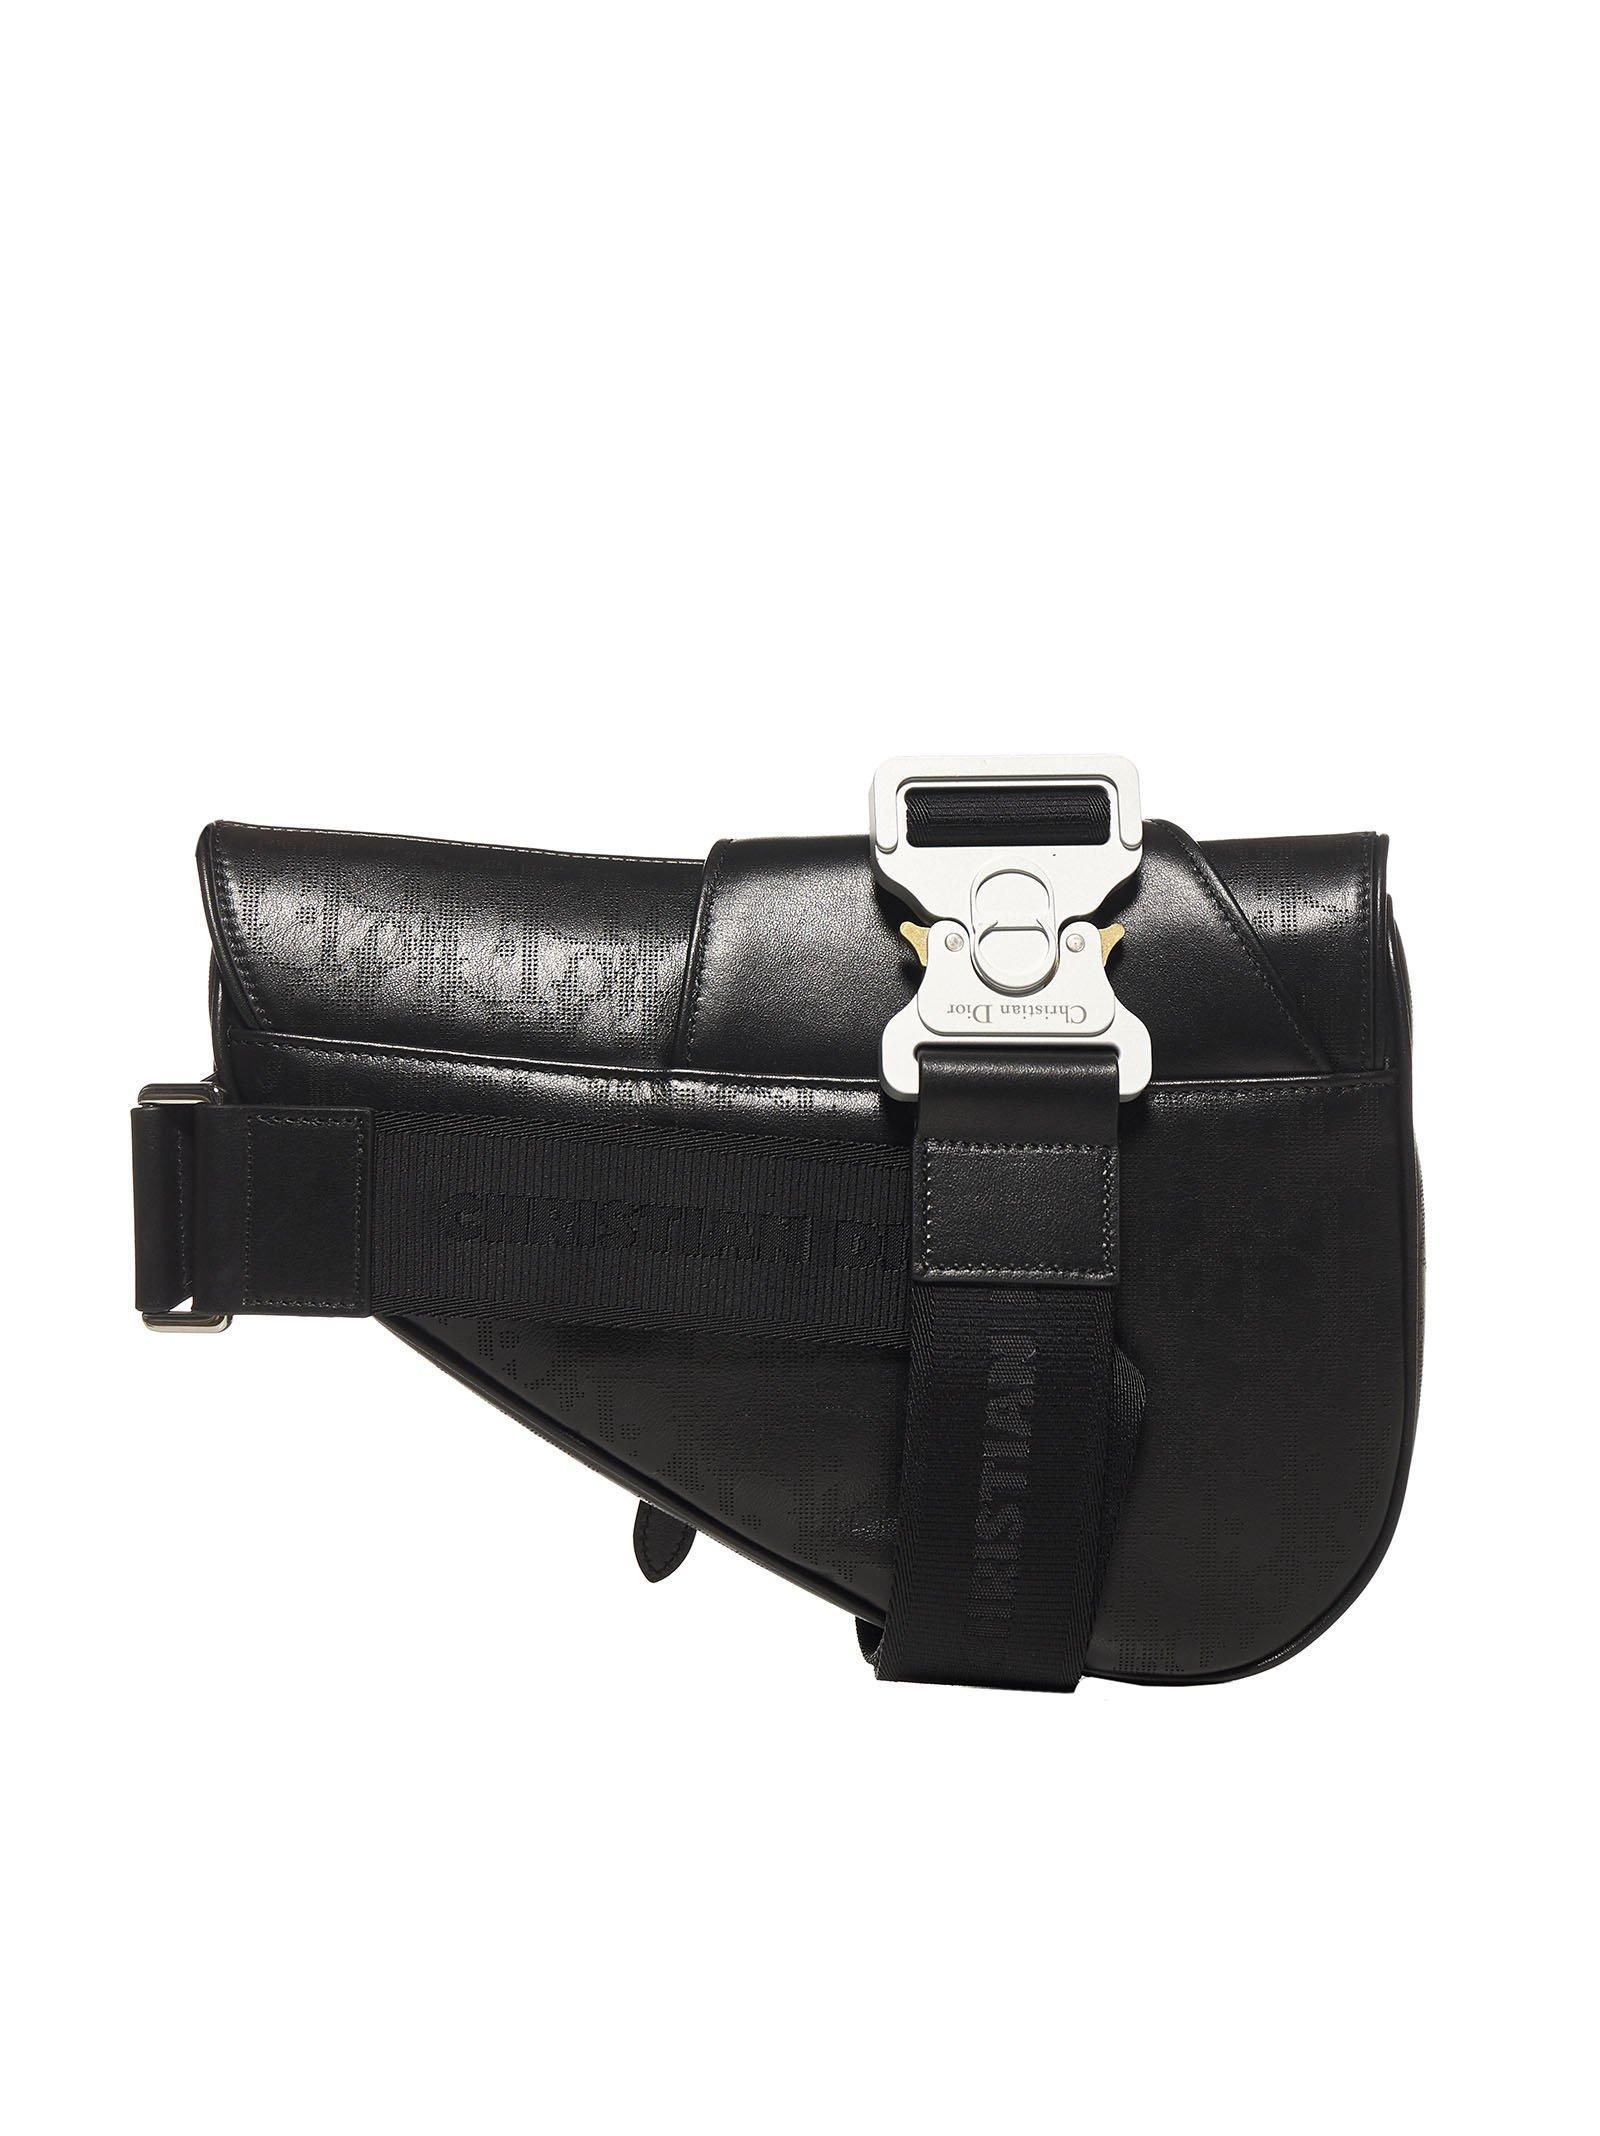 dior saddle bag black oblique